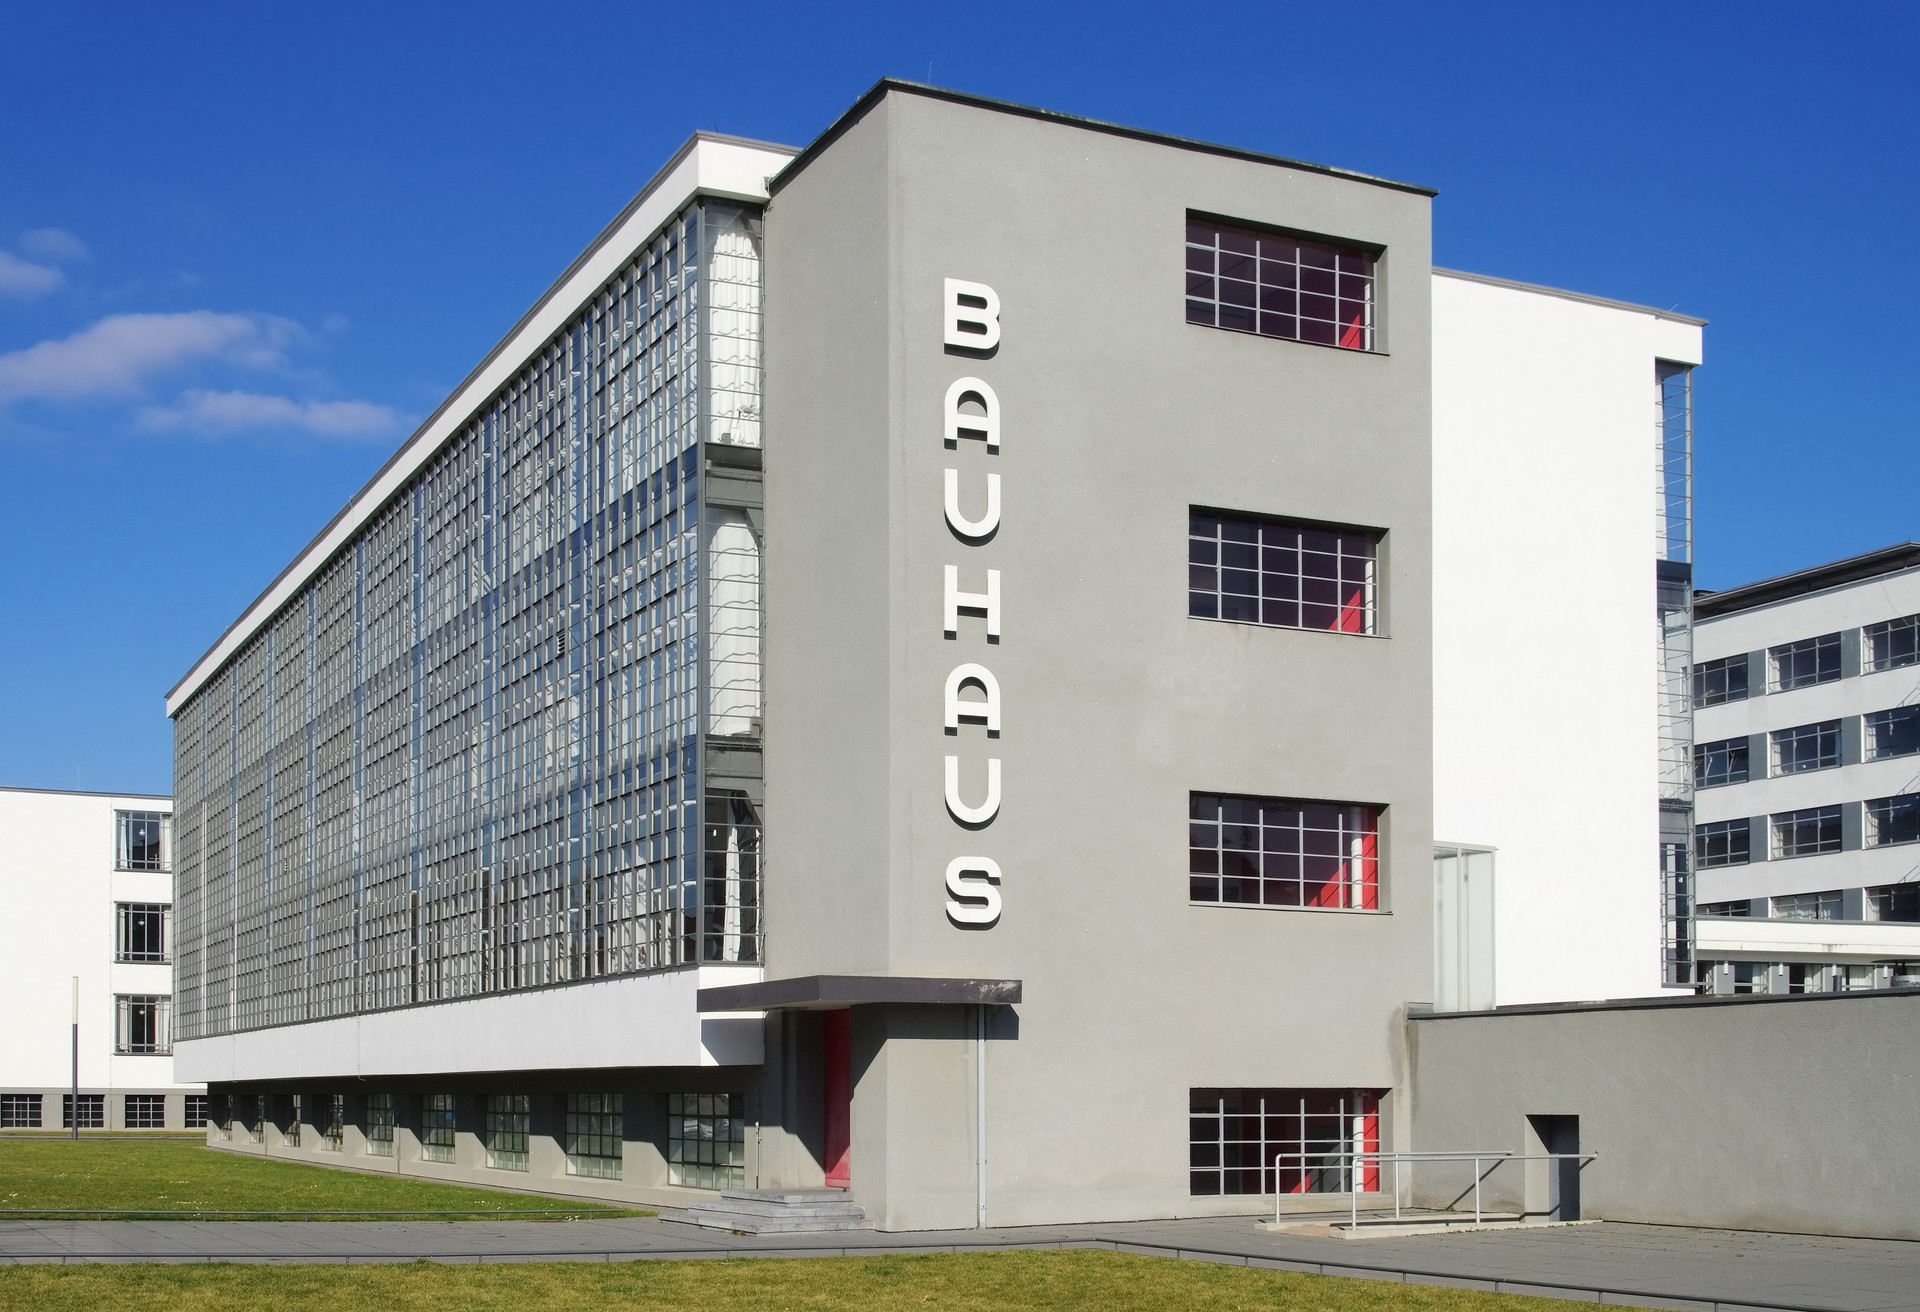 El edificio Bauhaus de Dessau se construyó entre 1925 y 1926 y aún tiene un aspecto muy moderno